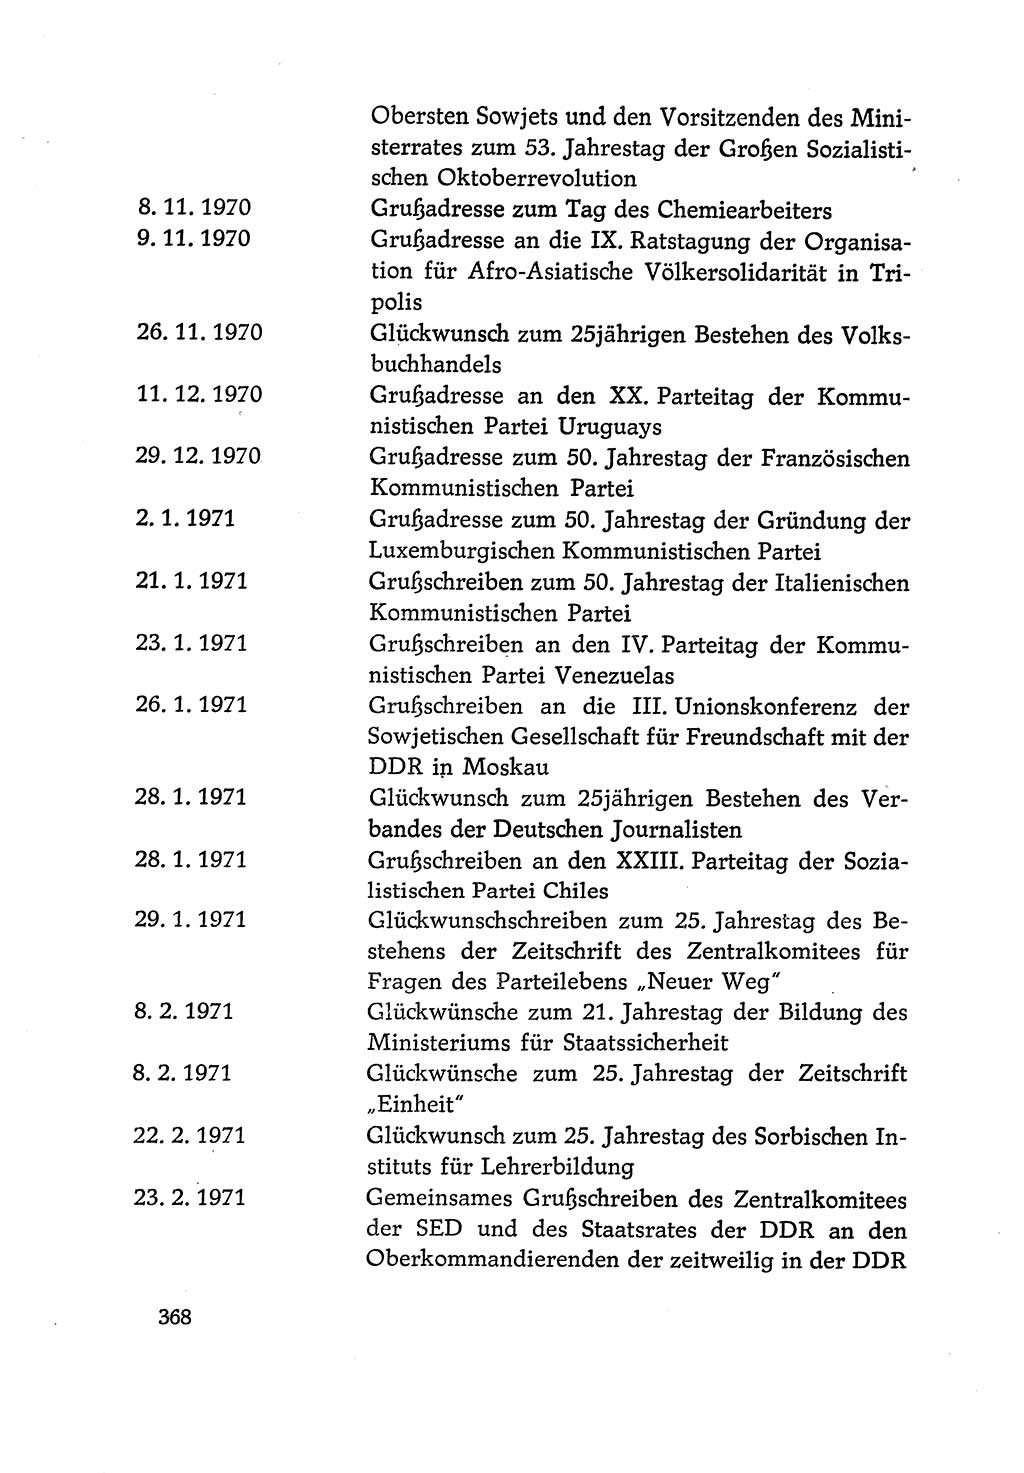 Dokumente der Sozialistischen Einheitspartei Deutschlands (SED) [Deutsche Demokratische Republik (DDR)] 1970-1971, Seite 368 (Dok. SED DDR 1970-1971, S. 368)